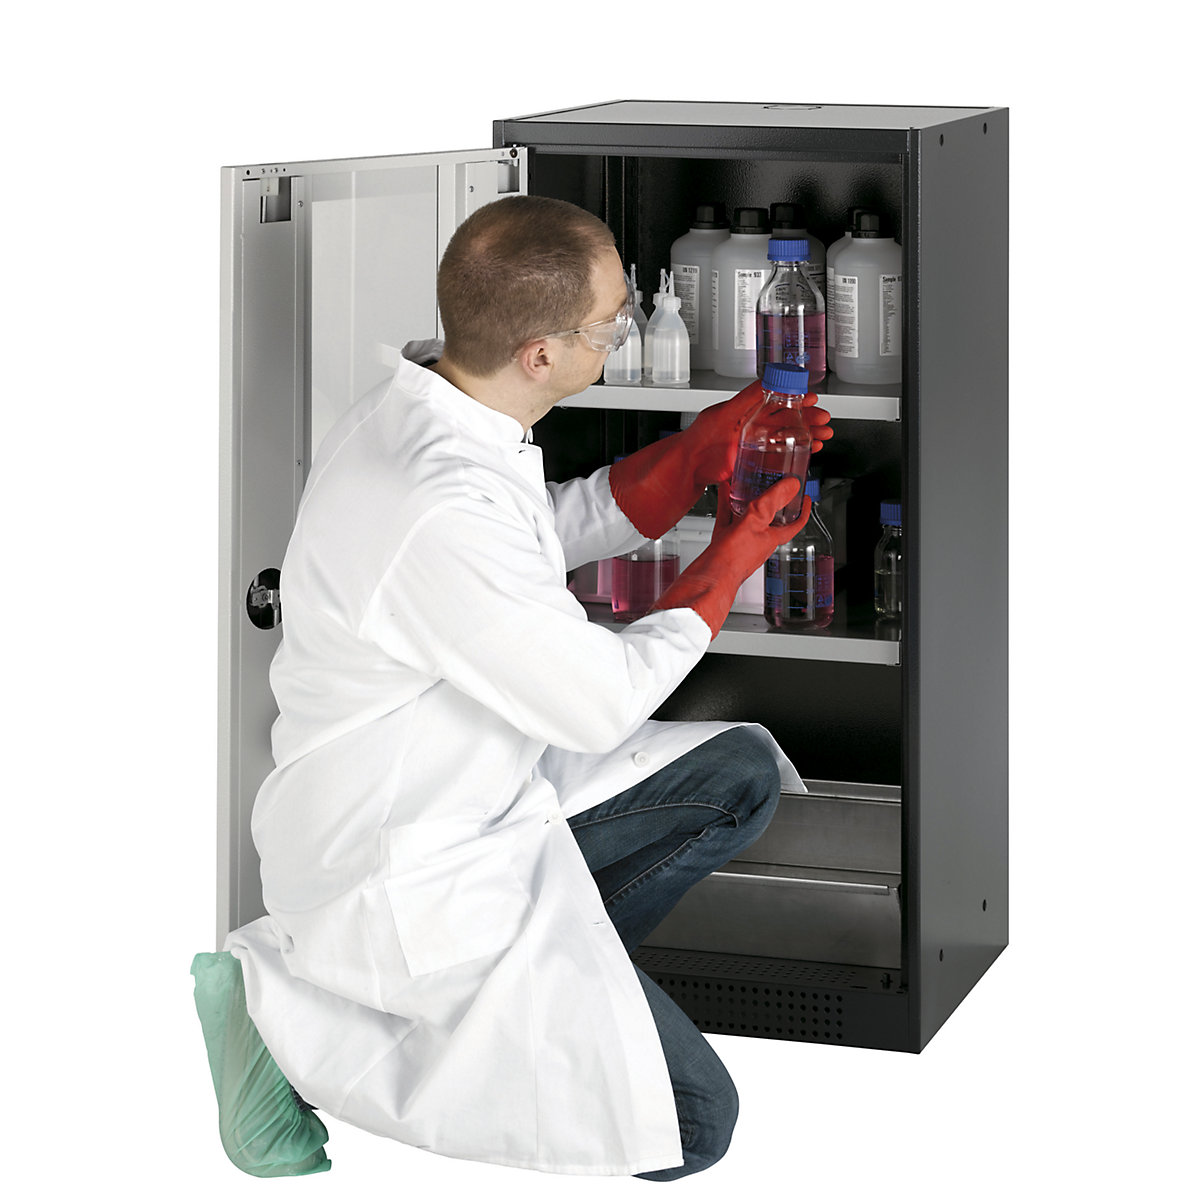 Laboratorijski ormarić za kemikalije – asecos, 1-krilni, poluvisok, 2 police, s oknom, u sivoj boji-2